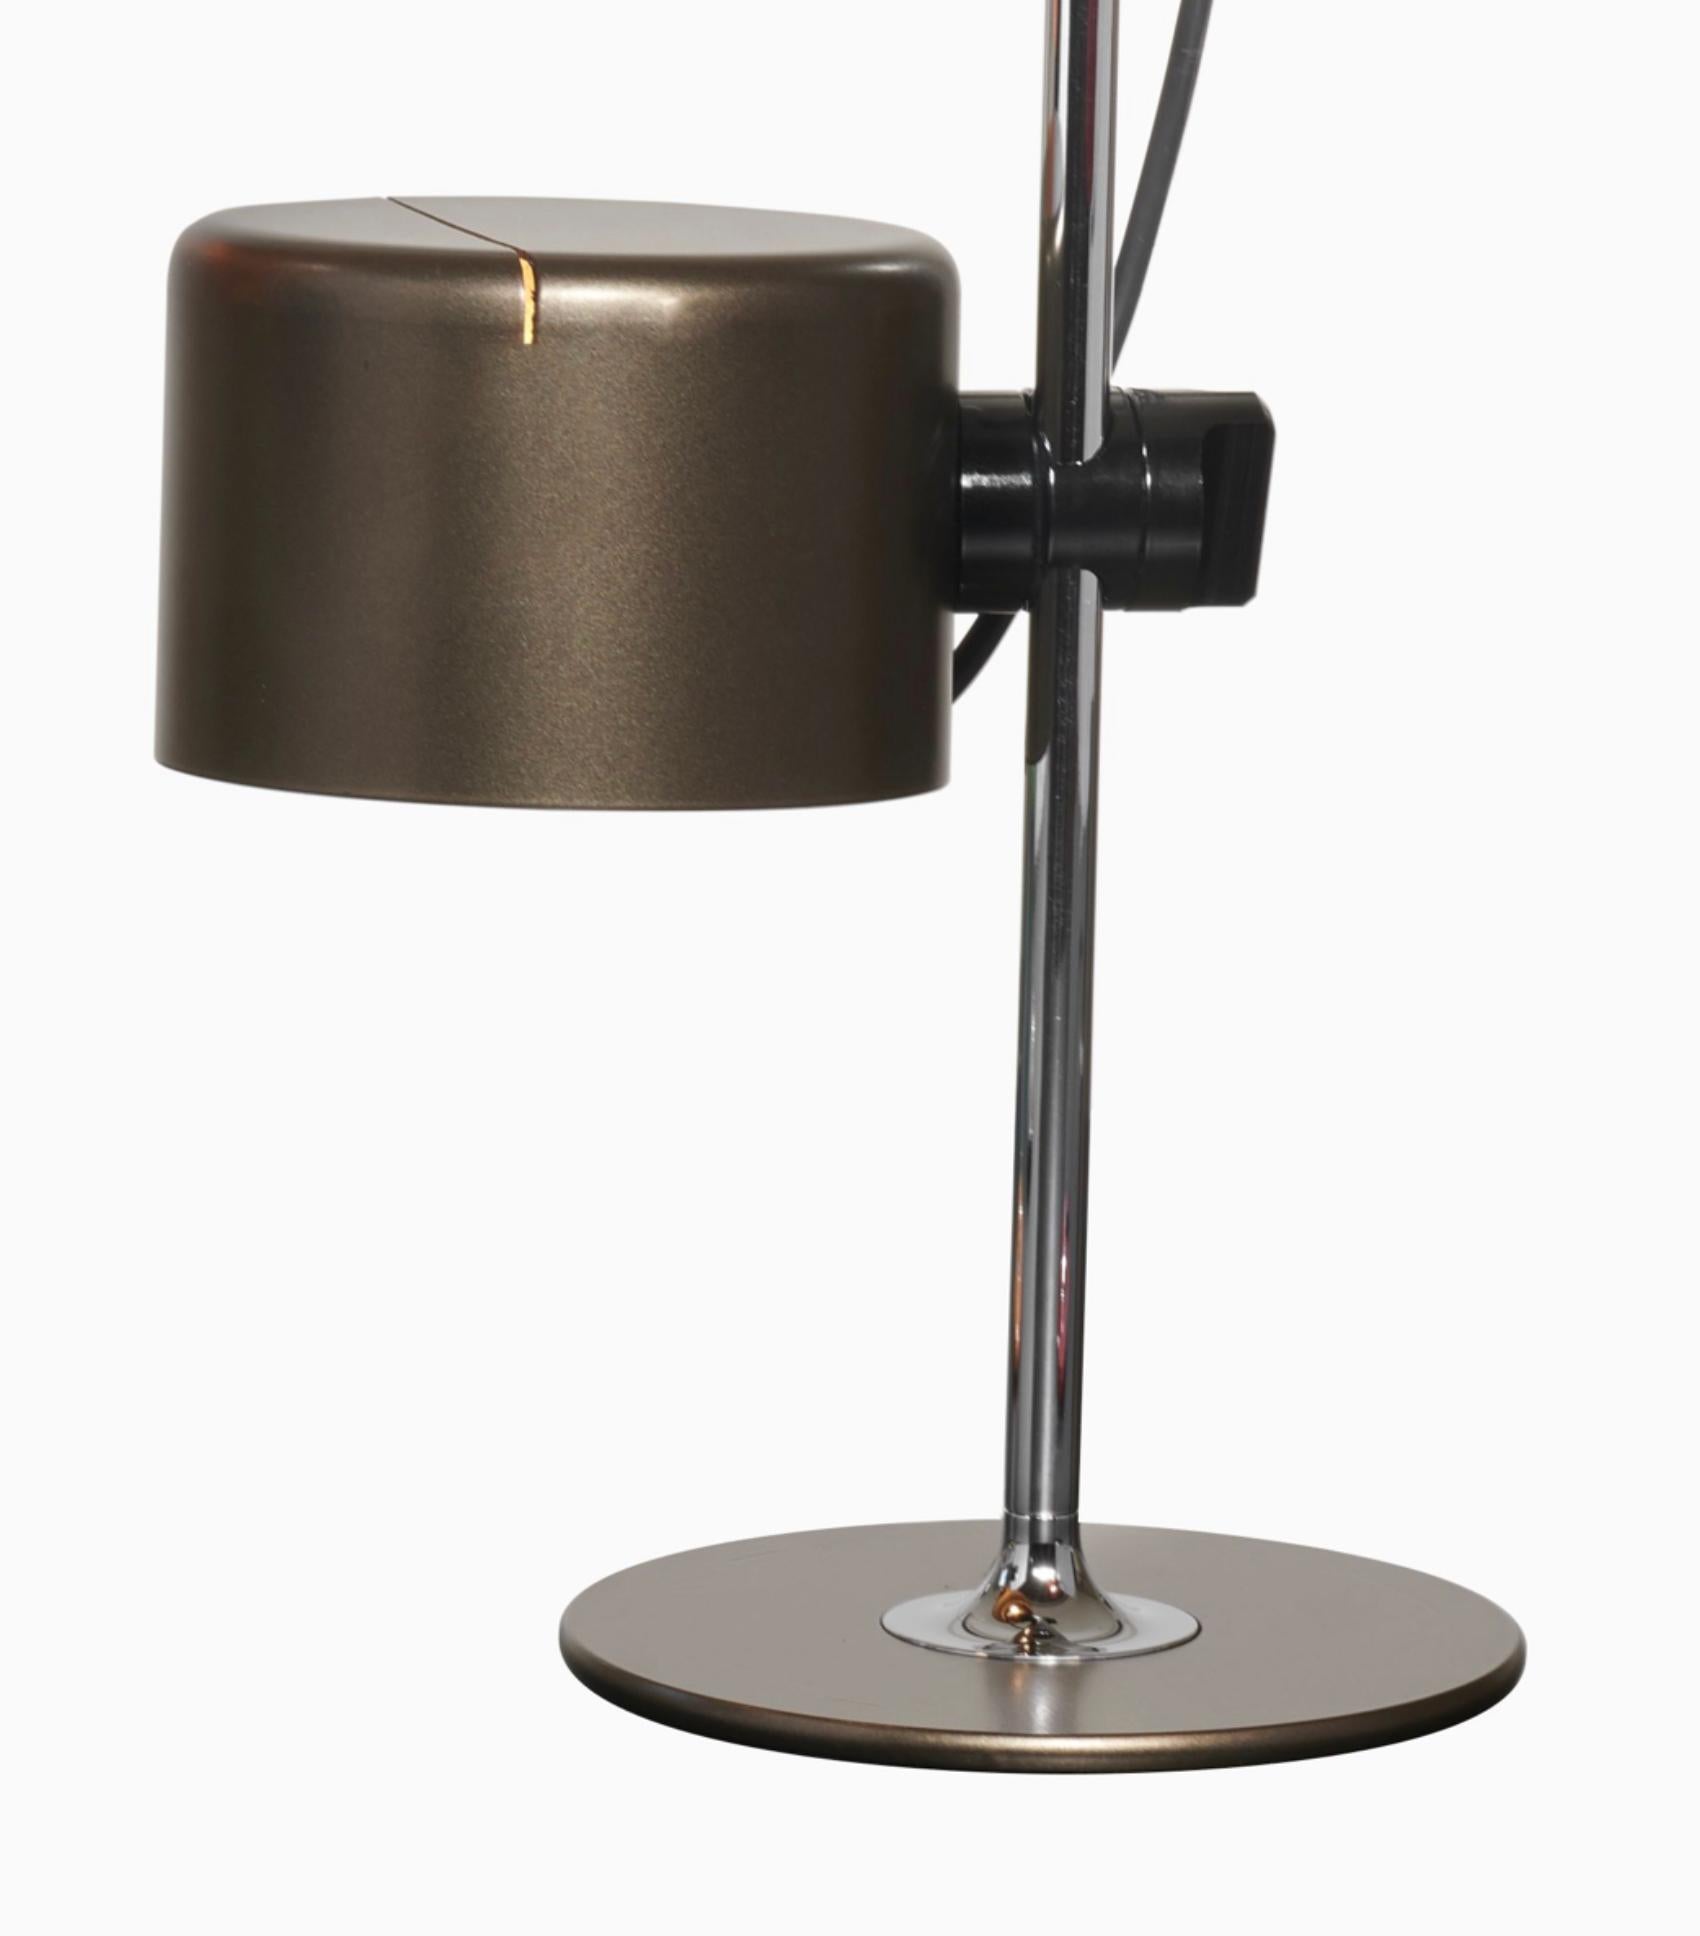 Lampe de table modèle Mini Coupe conçu par Joe Colombo.
Lampe de table à lumière directe, base en métal laqué, tige chromée, réflecteur réglable en aluminium laqué.
Fabriqué par Oluce, Italie.

Coupé est née en 1967 de l'intuition créatrice de Joe